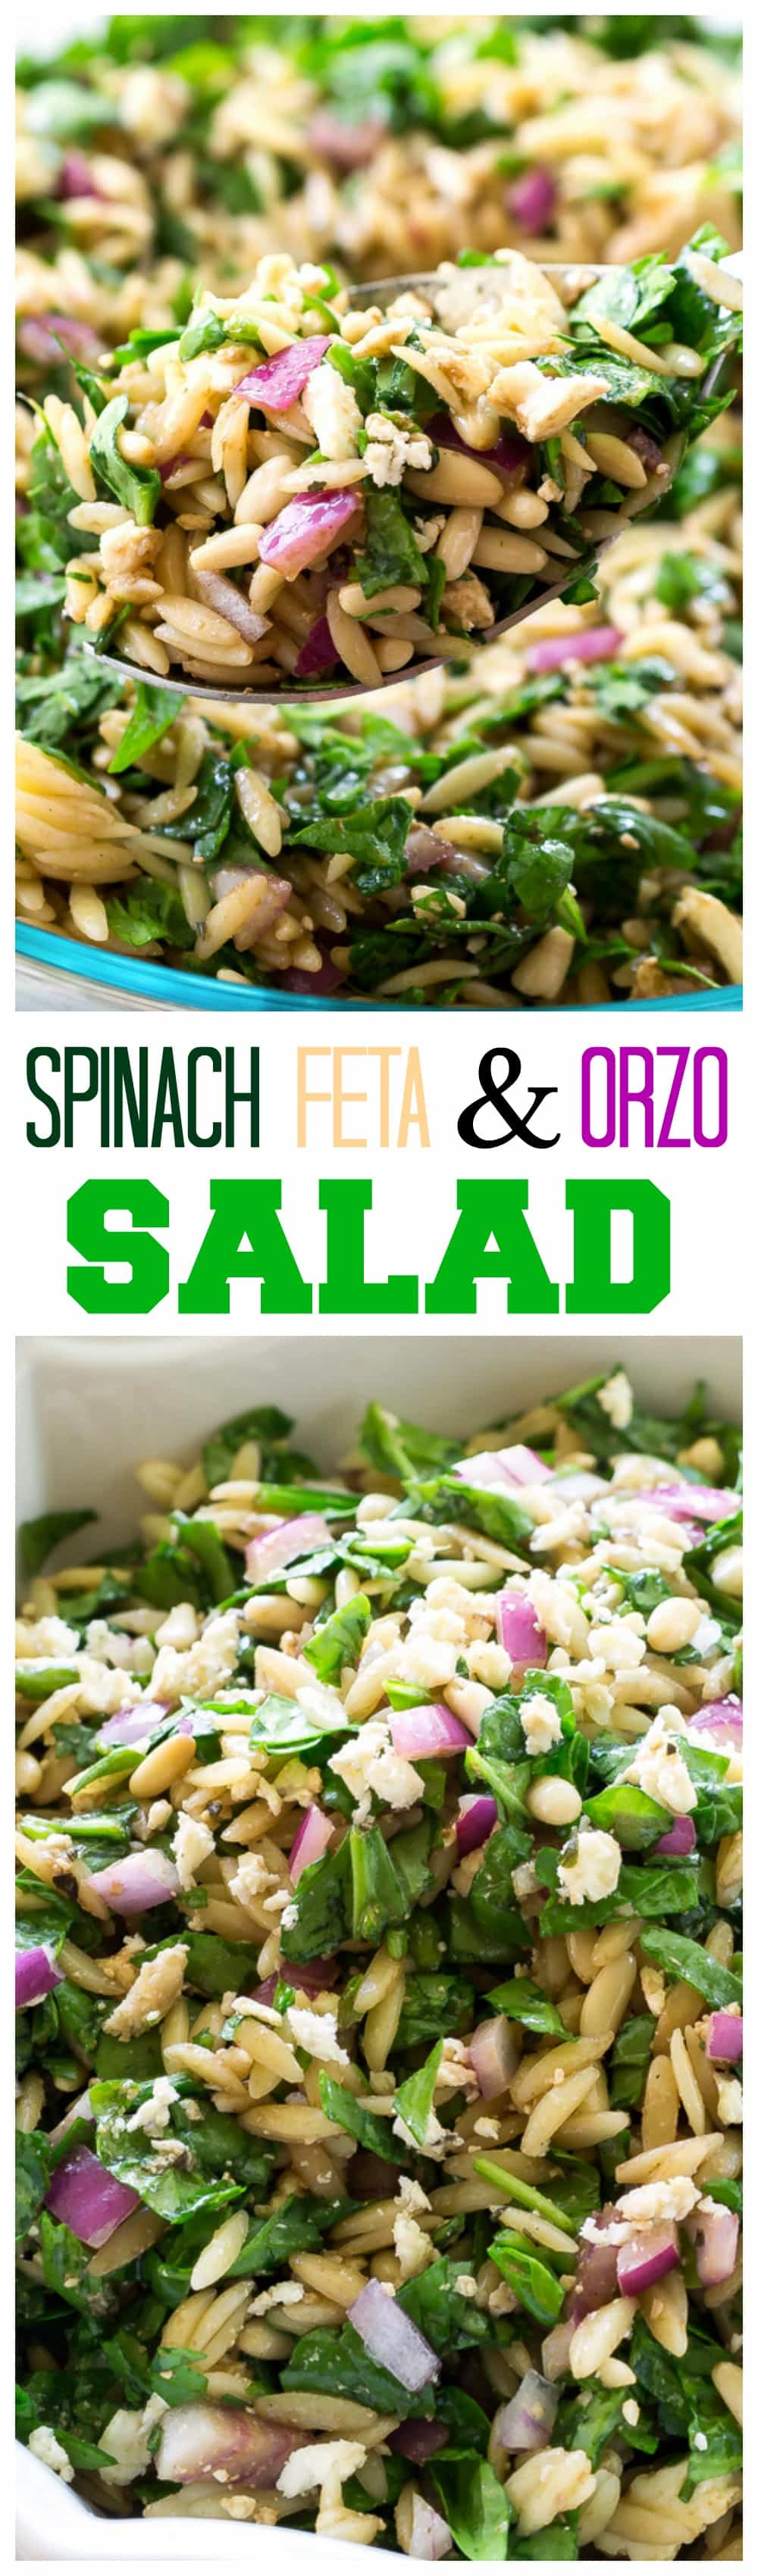 Salada de Espinafre, Feta e Orzo - em um vinagrete balsâmico.  #espinafre #feta #orzo #salada #receita